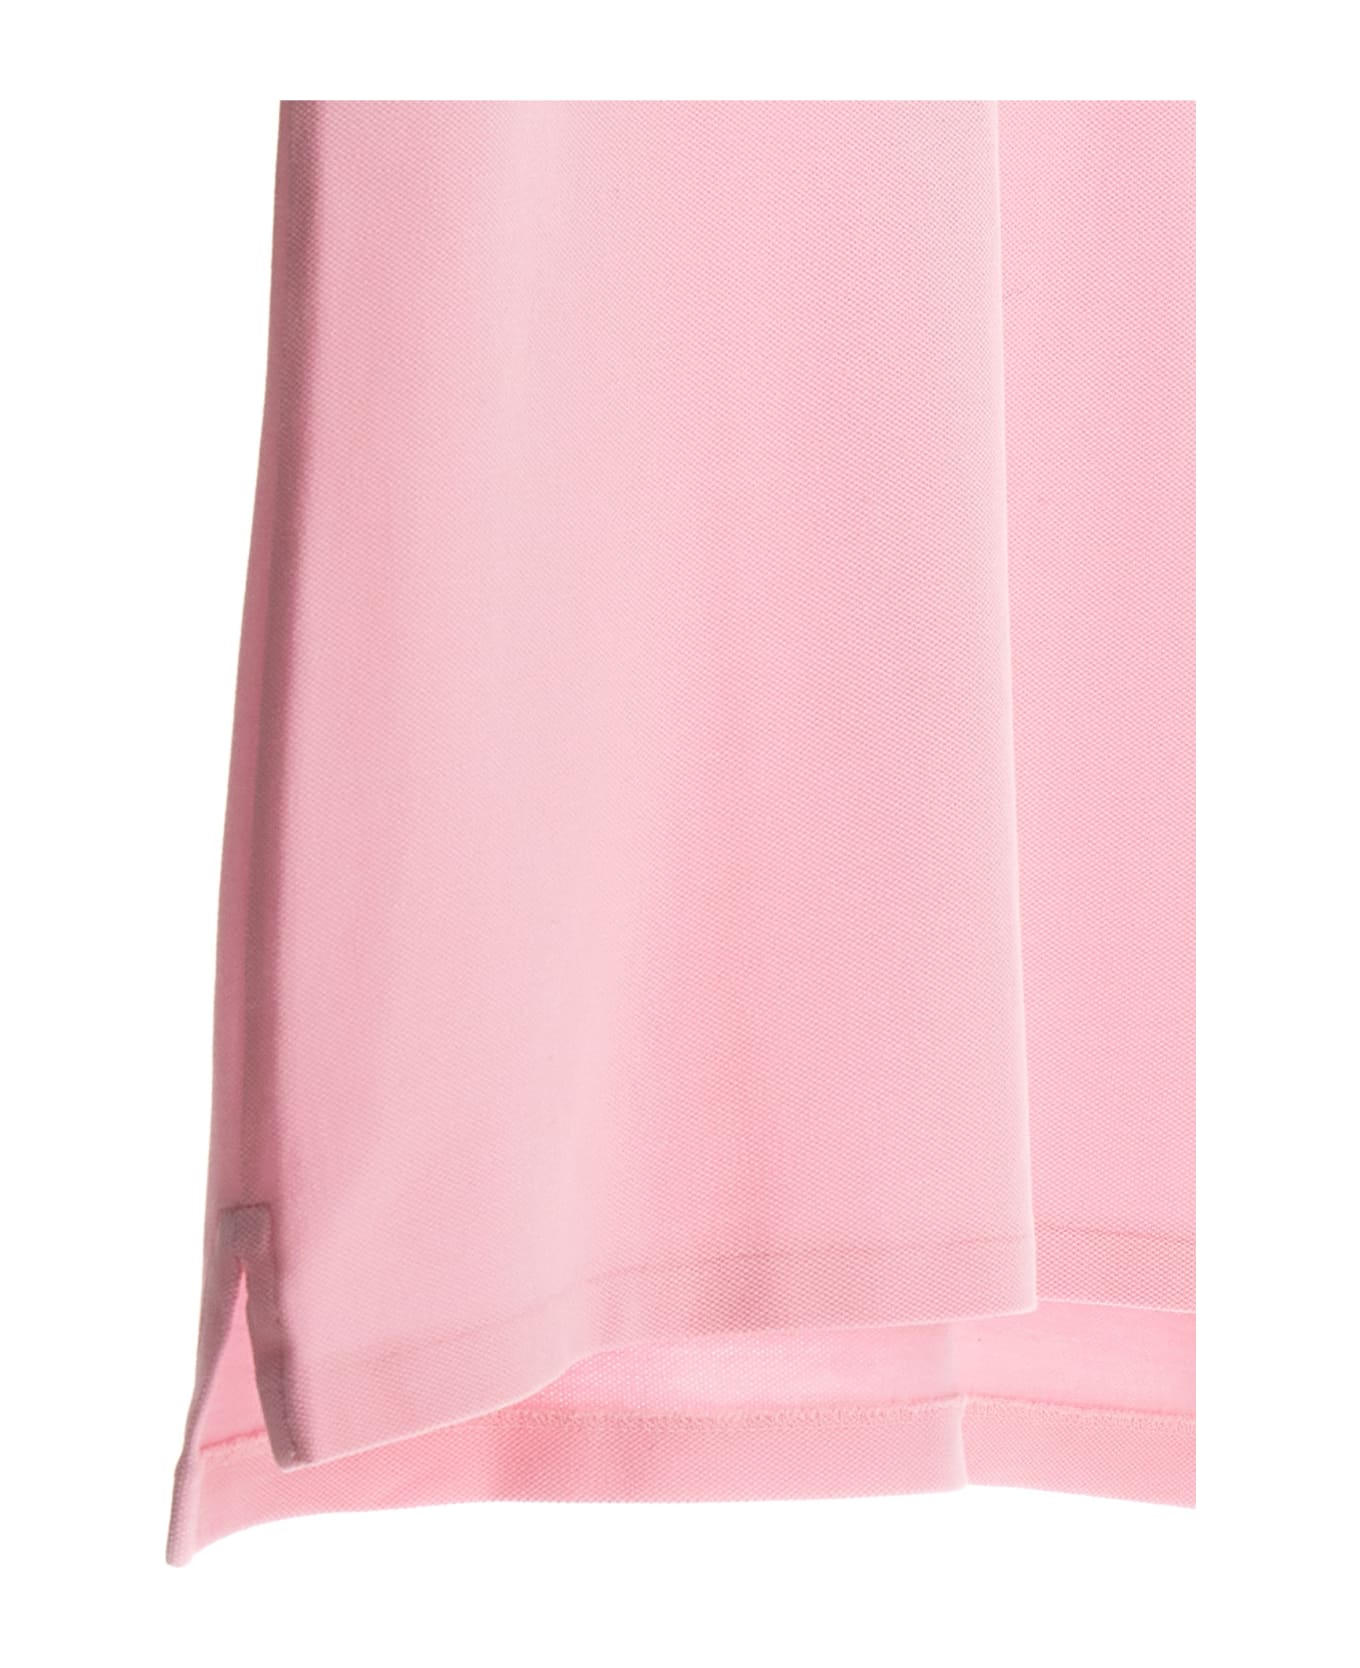 Polo Ralph Lauren 'julie' Polo Shirt - Pink